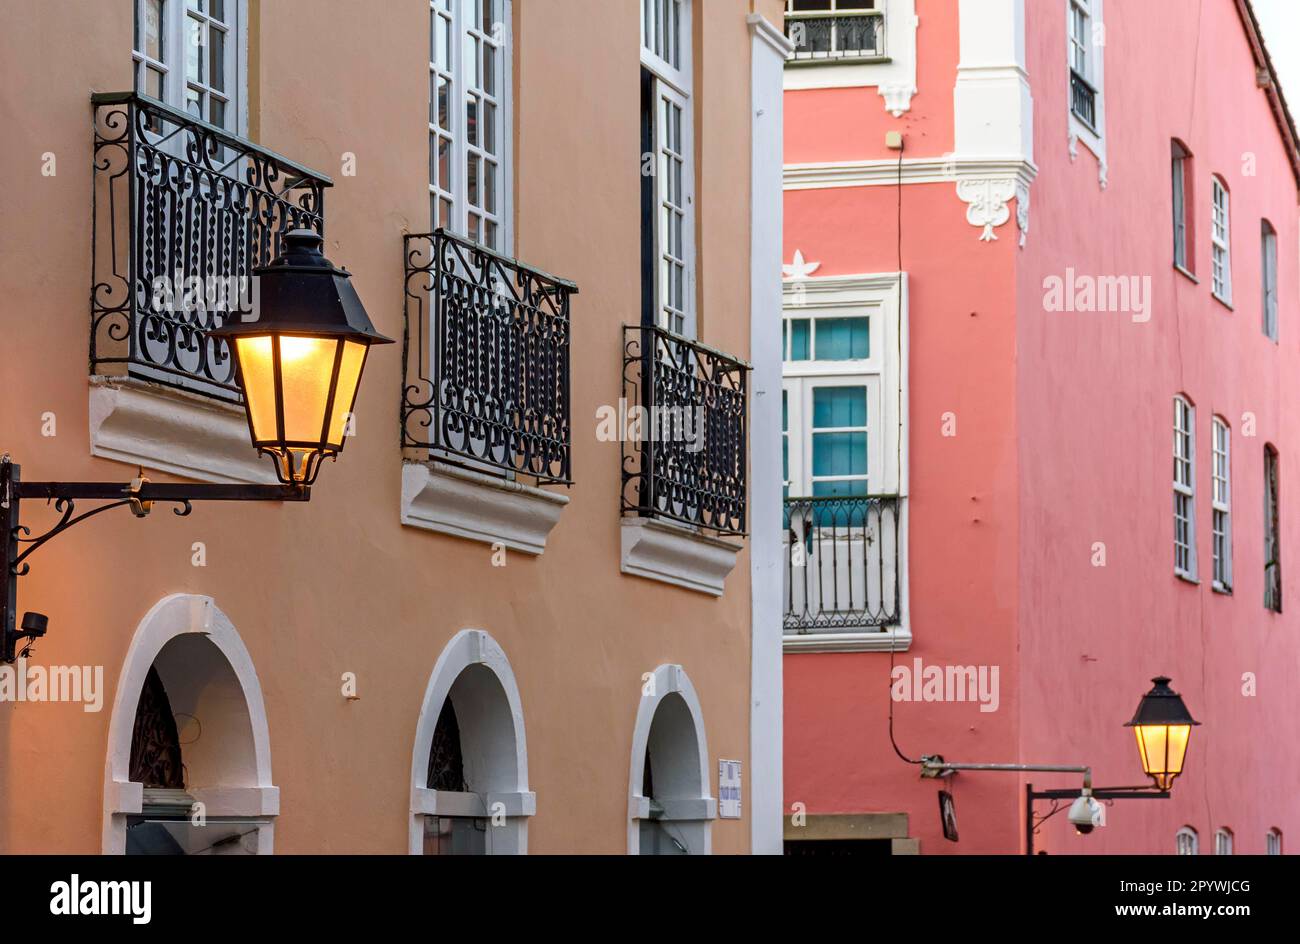 Facciata di vecchi edifici in stile coloniale con i loro balconi, lanterne e finestre decorate nel quartiere Pelourinho nella città di Salvador Foto Stock